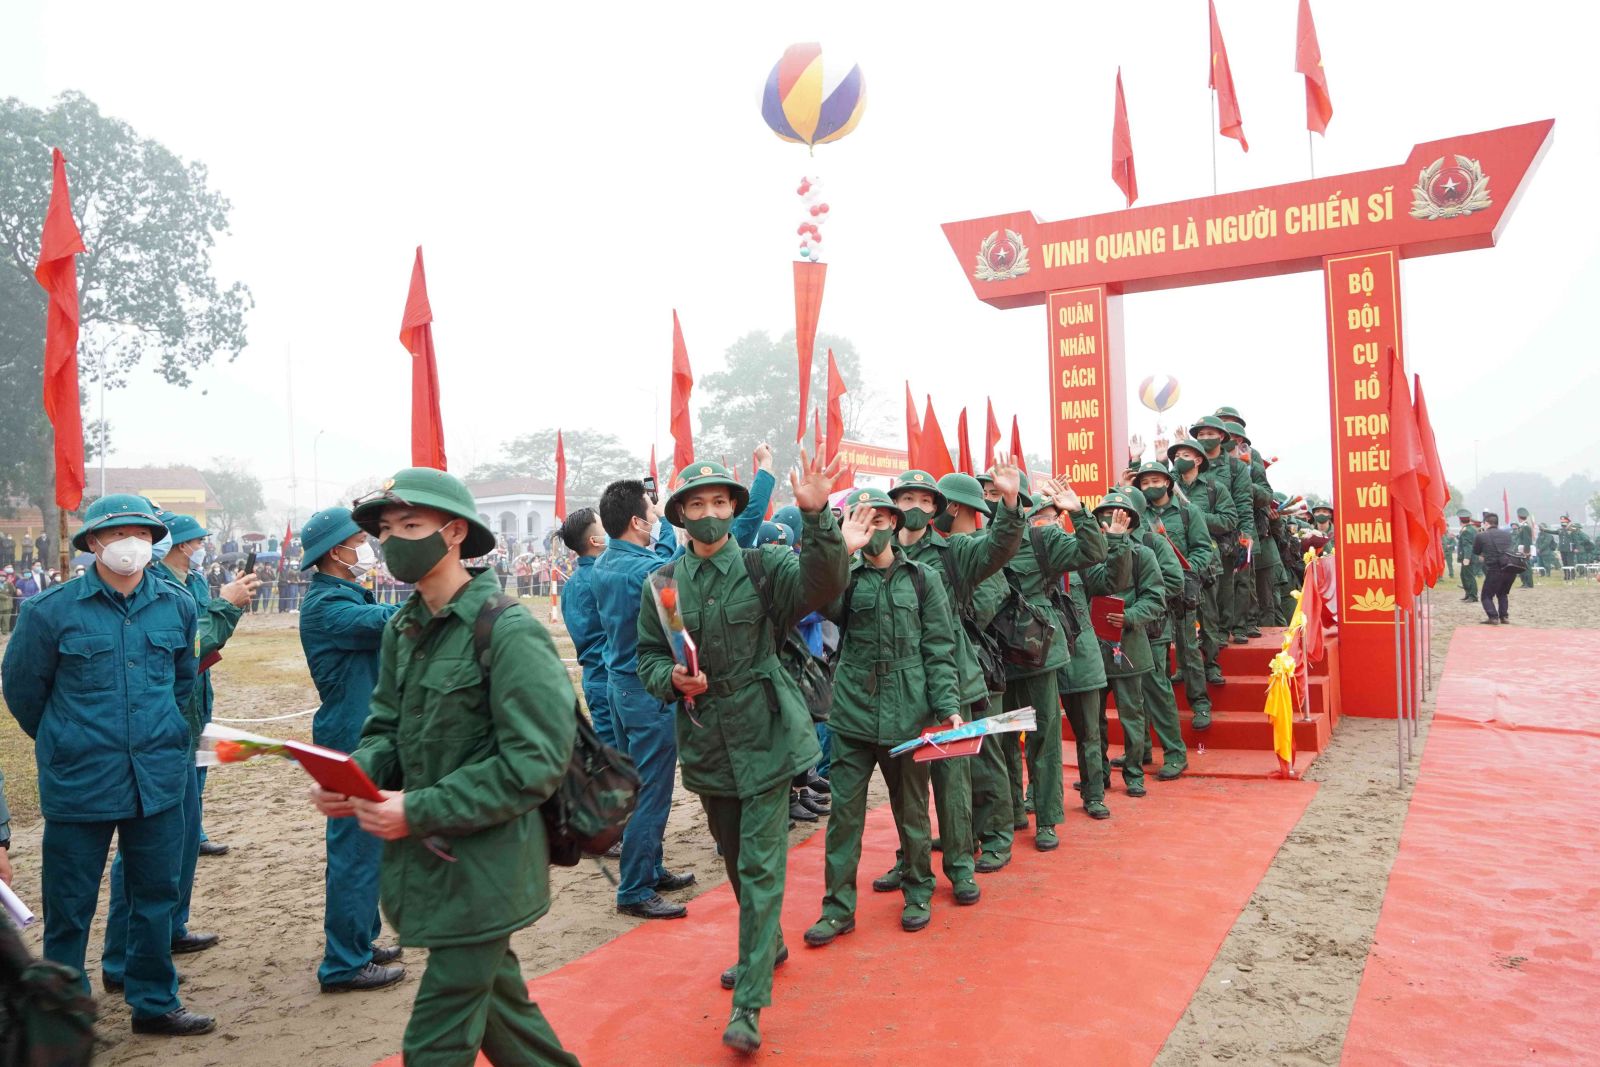 Bảo vệ Tổ quốc là trách nhiệm của mỗi thanh niên Việt Nam